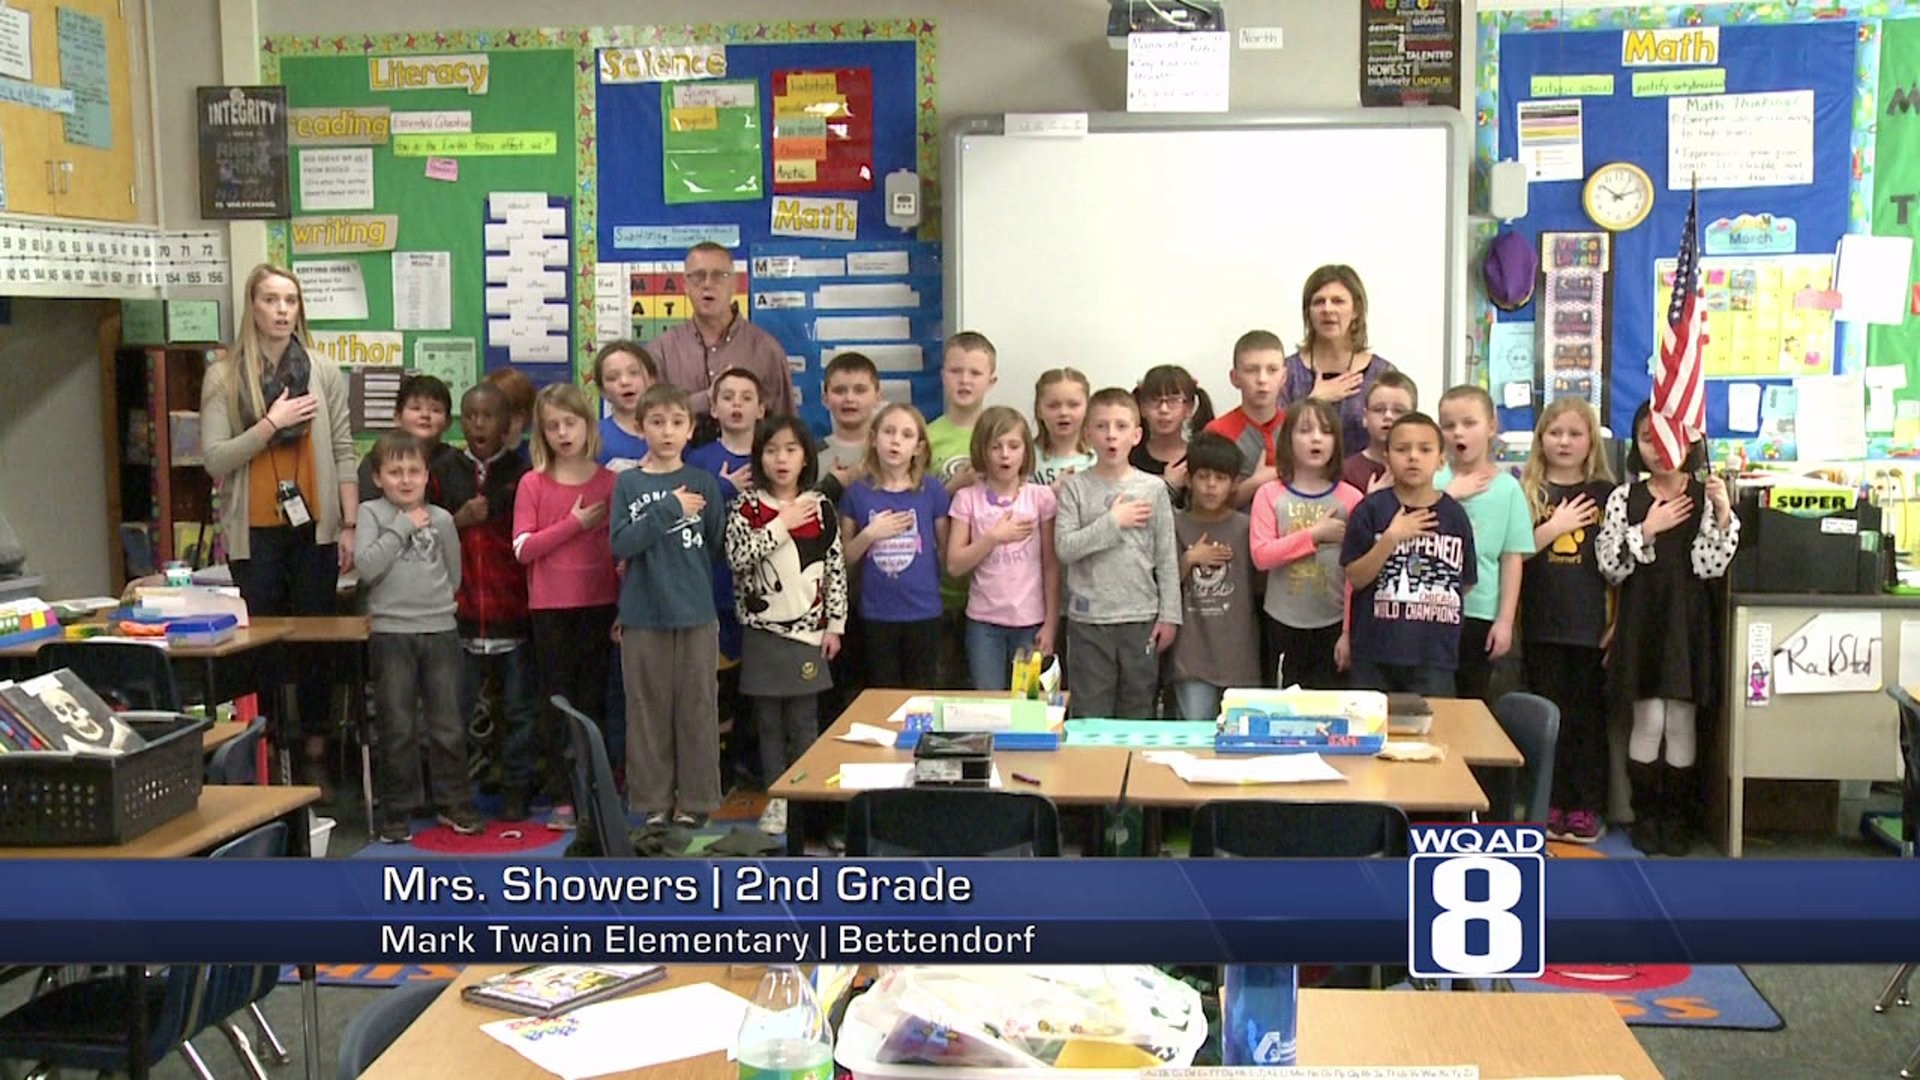 Mrs. Showers` 2nd Grade class